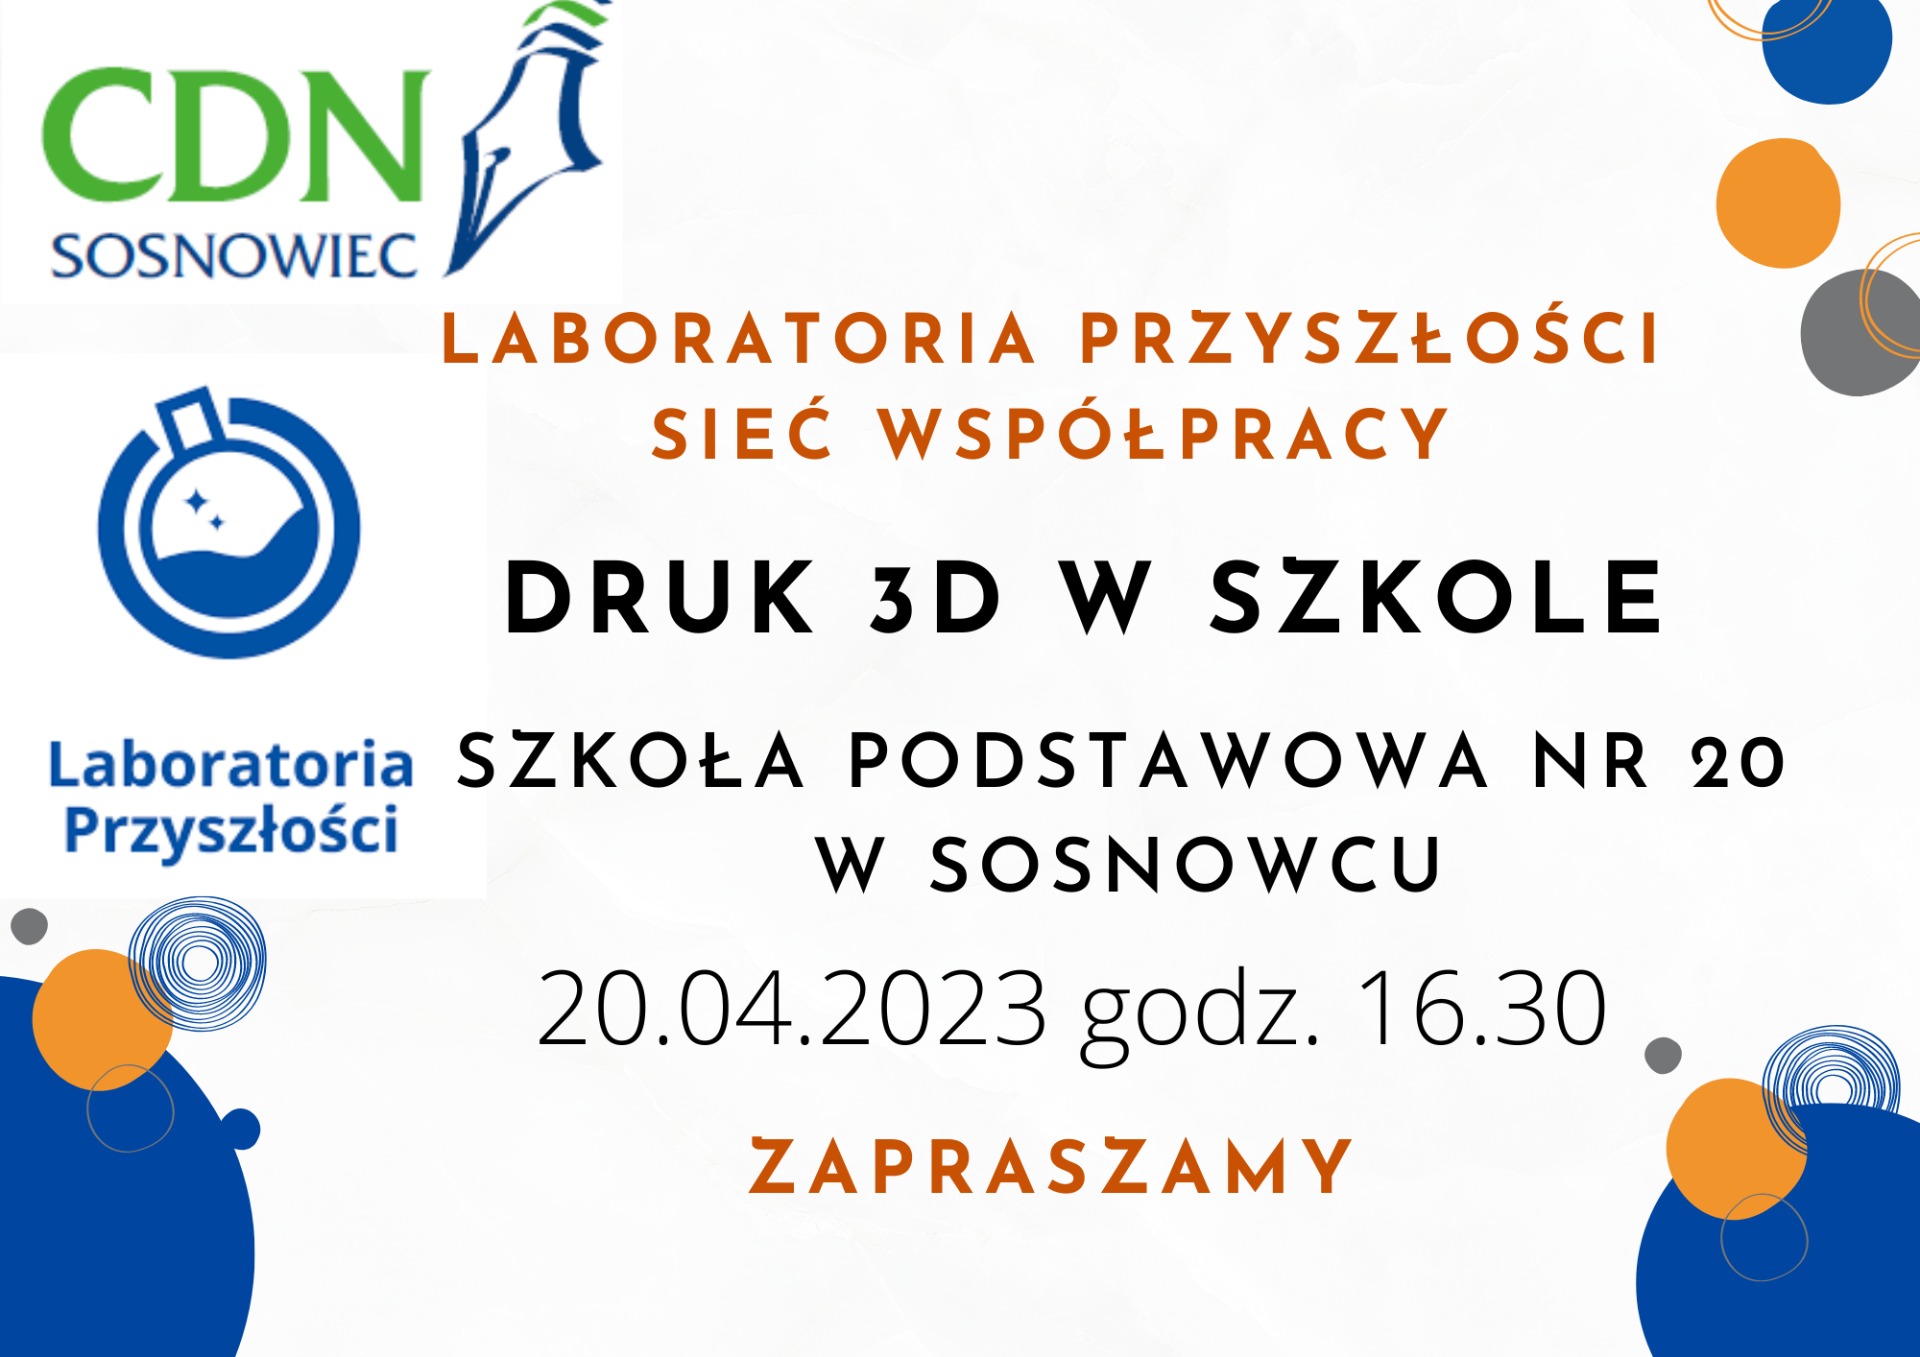 
Laboratoria Przyszłości Sieć Współpracy
DRUK 3D W SZKOLE
Termin: 20.04.2023 r. godz.16.30
Miejsce: Szkoła Podstawowa nr 20 
w Sosnowcu